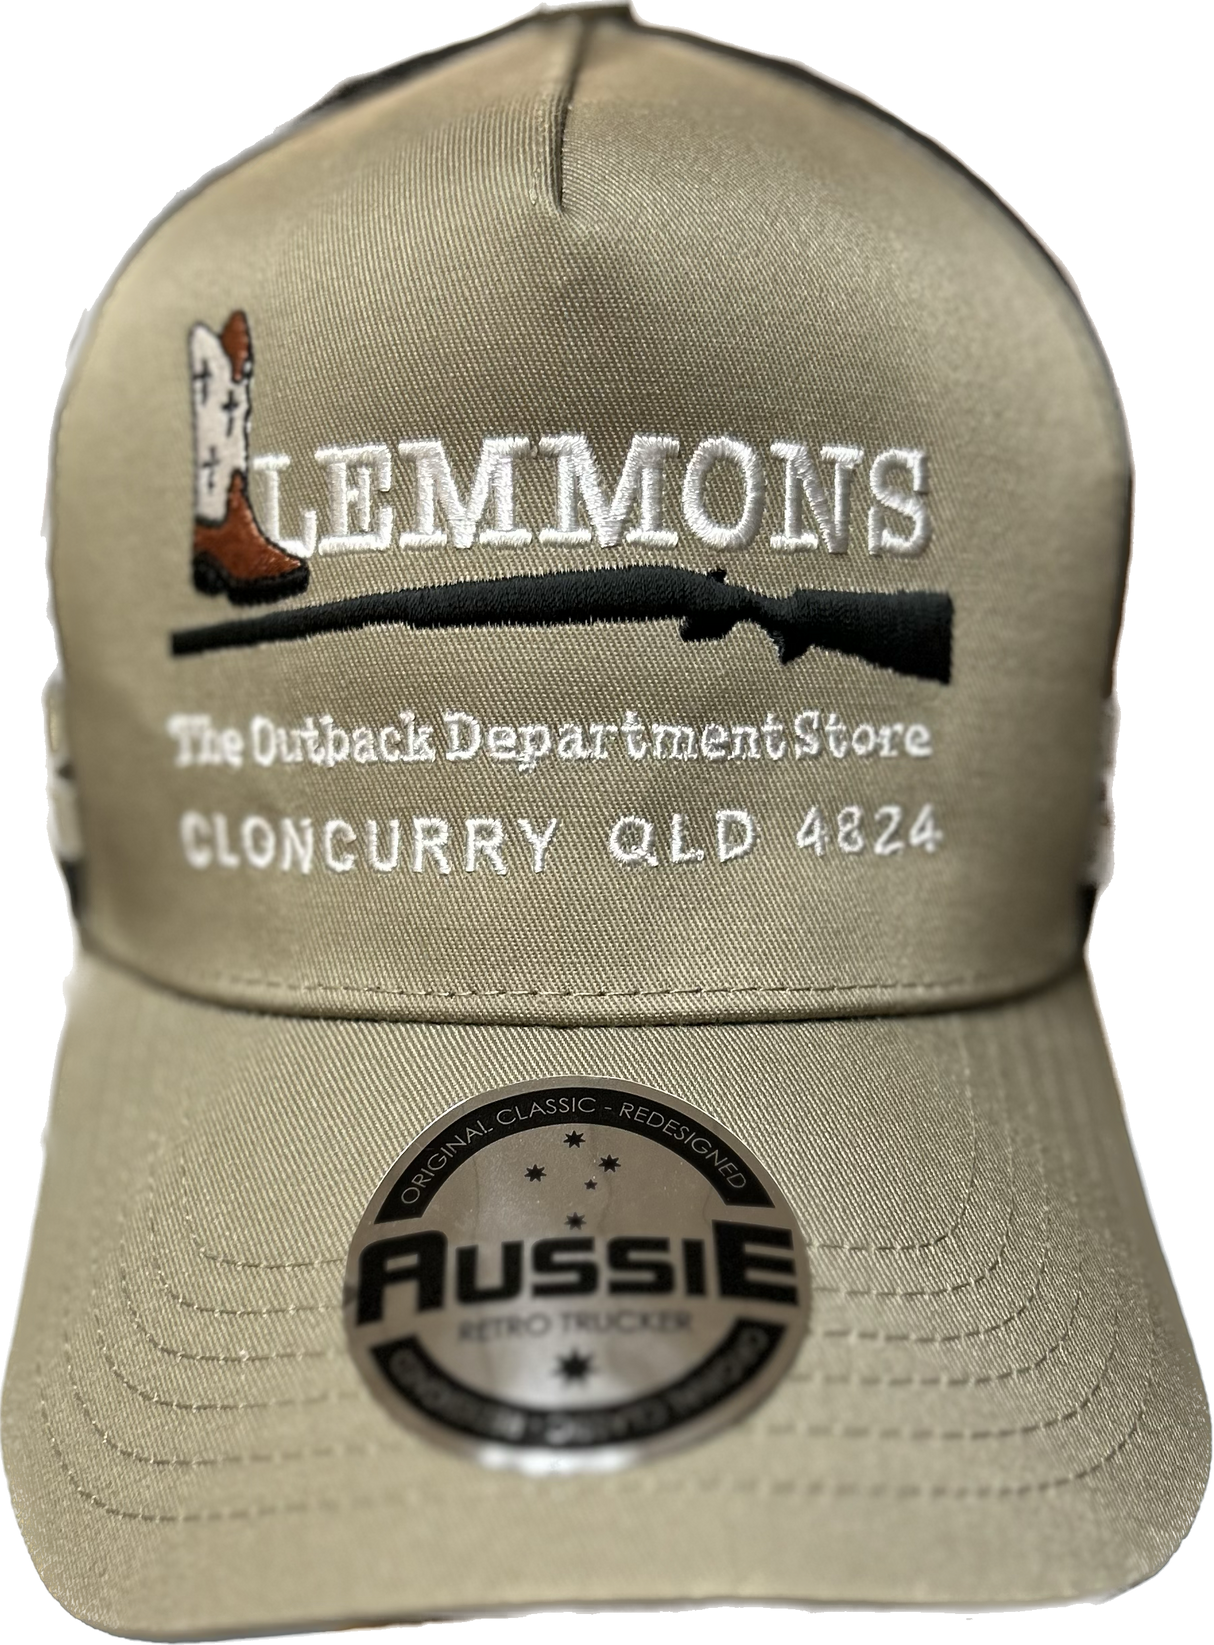 Lemmons Store Outback Trucker Cap